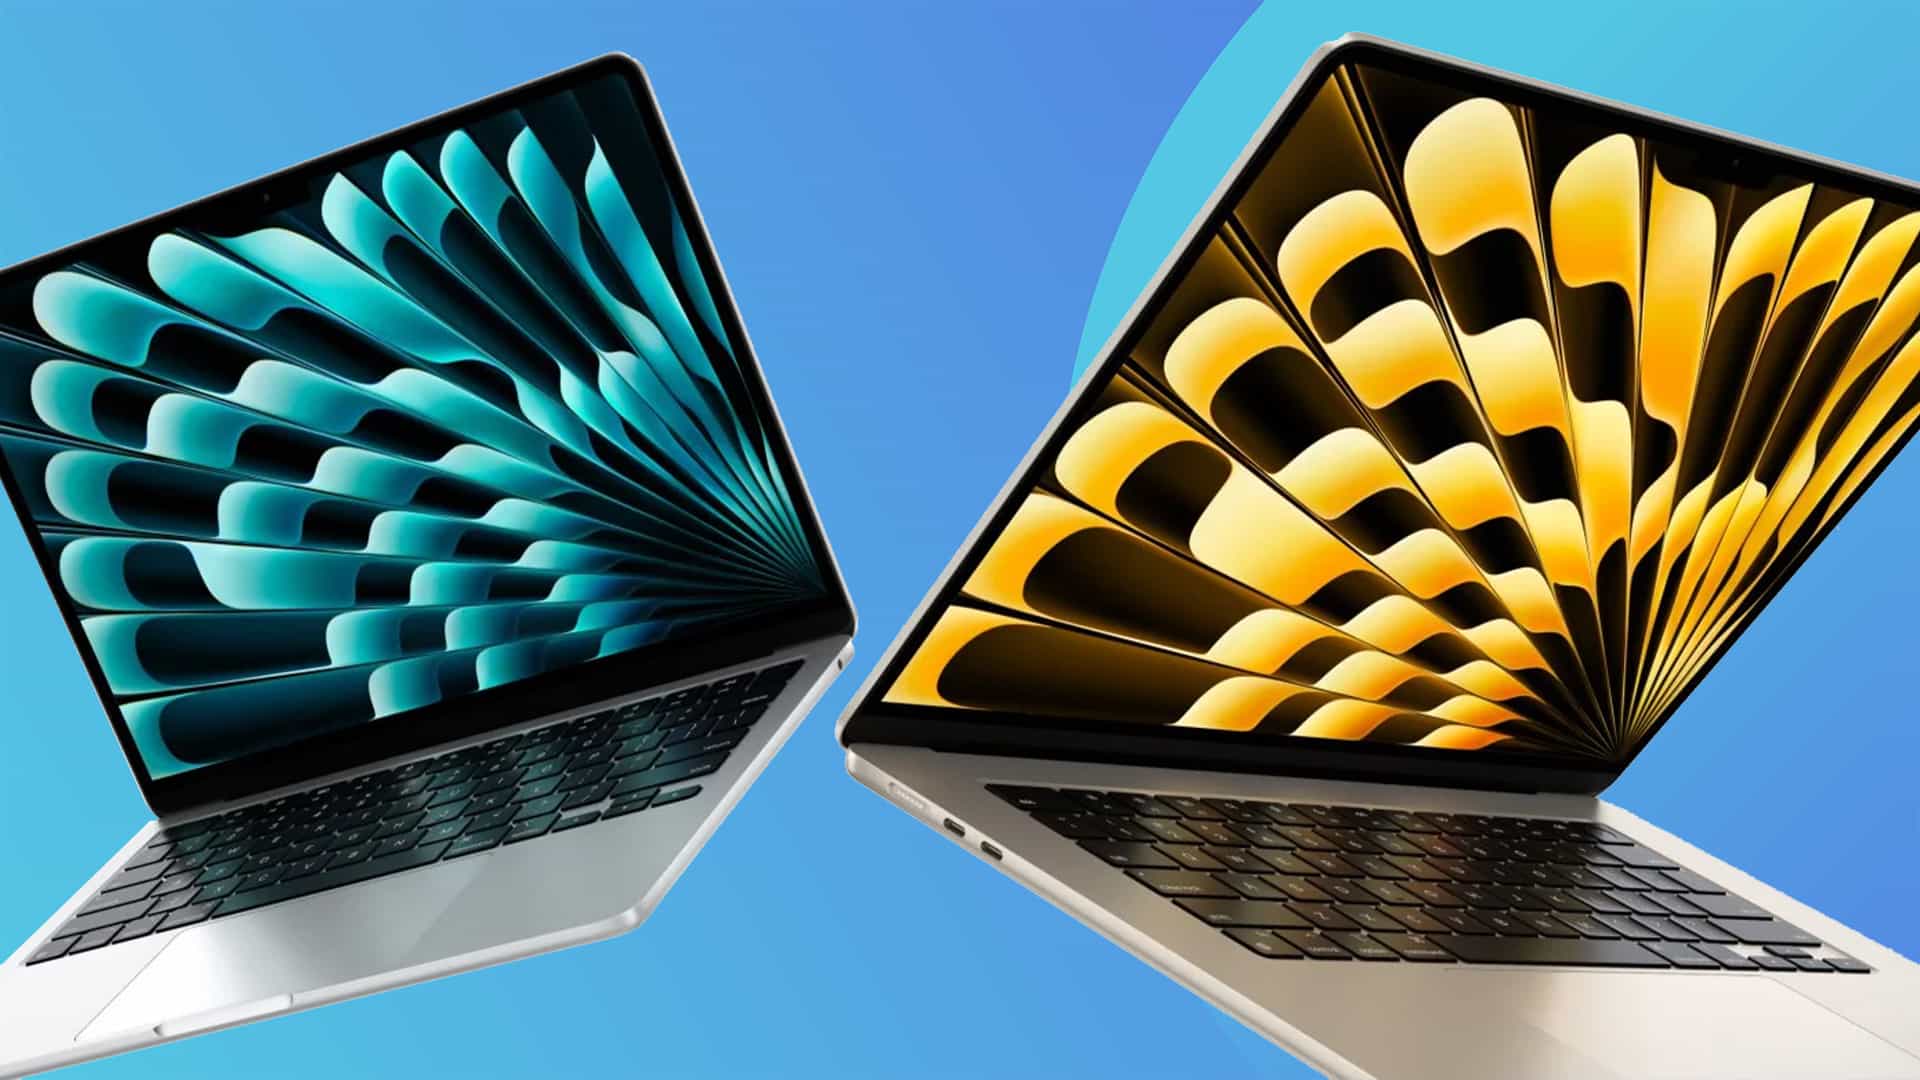 Los fans de Apple acaban de ver una ilusión óptica en el nuevo fondo de pantalla del MacBook Air